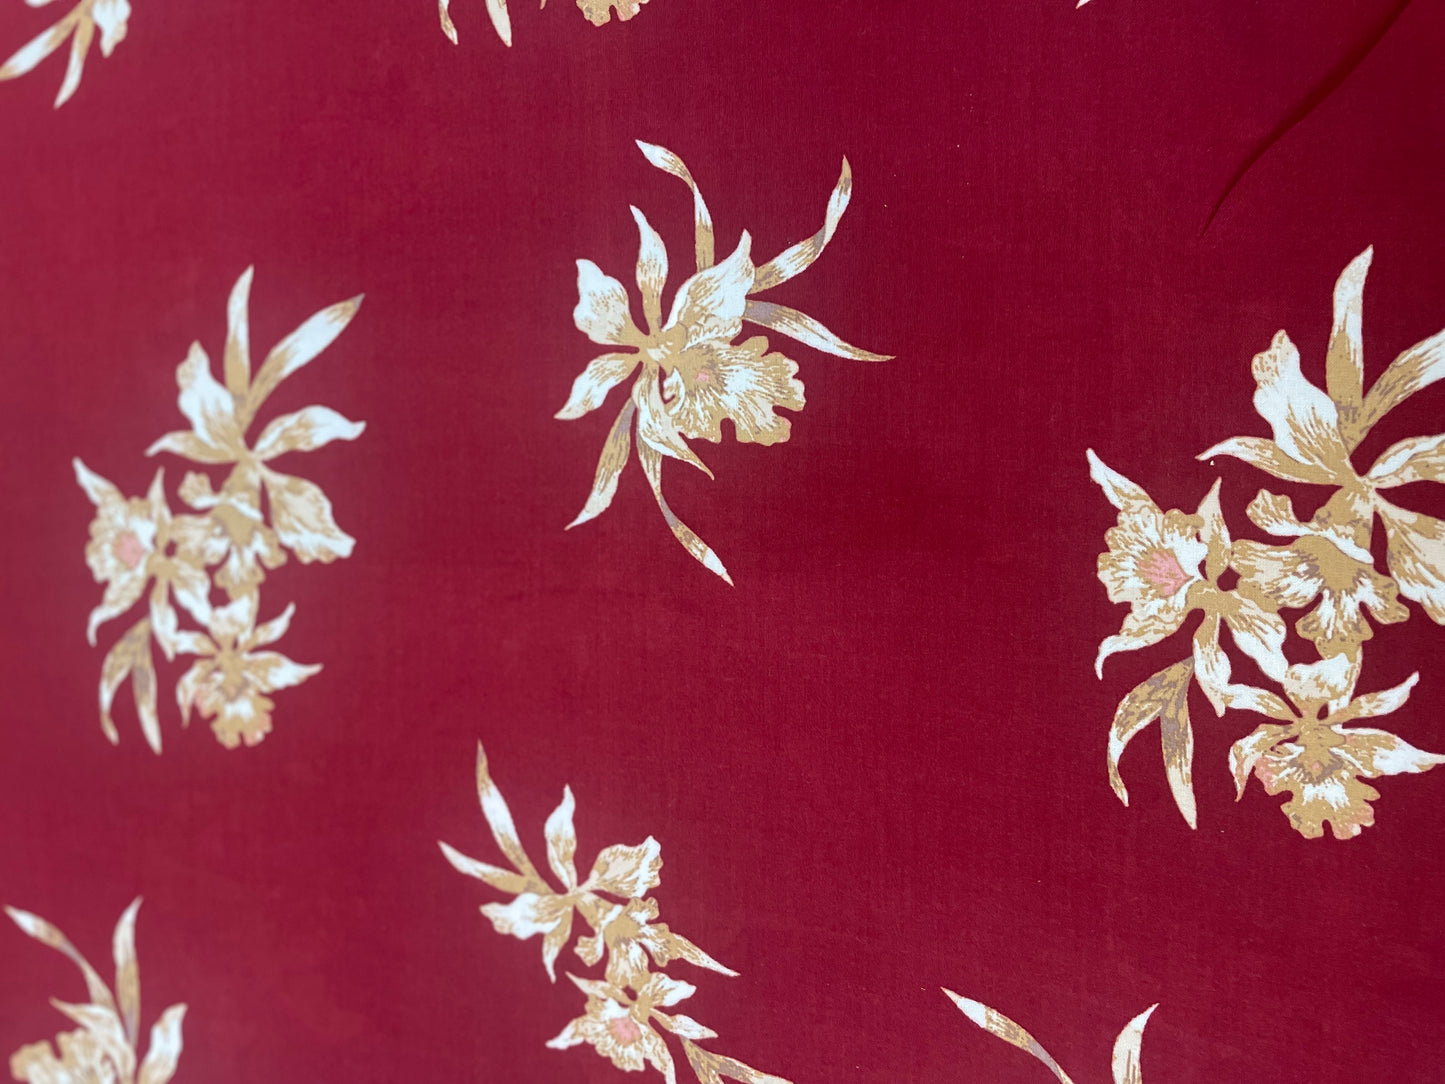 Floral Rayon Print - Burgundy, White & Tan